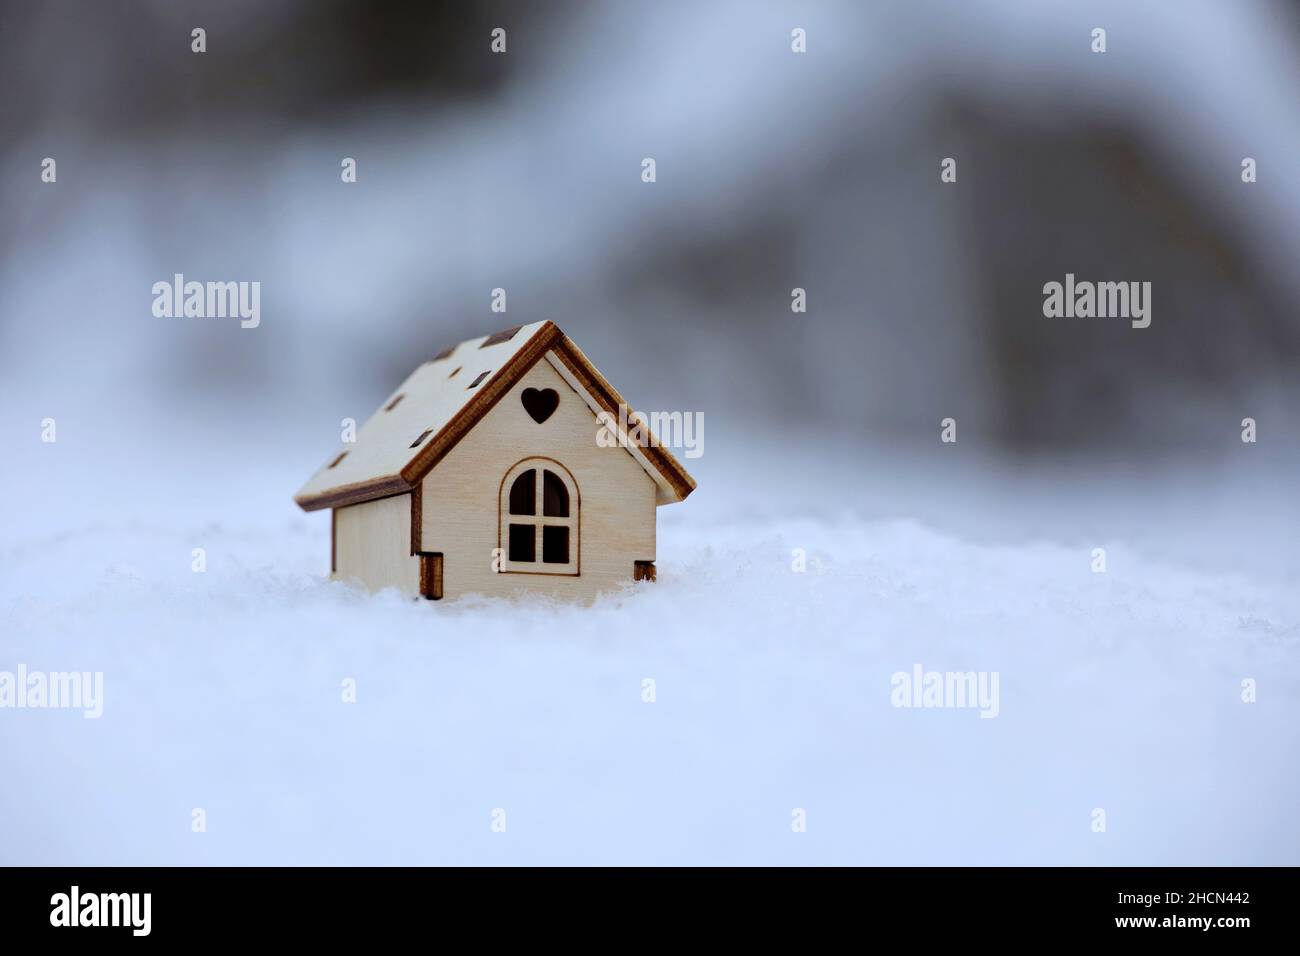 Modèle de maison en bois dans la neige.Concept de chalet de campagne, recherche de logements en hiver, immobilier en zone écologiquement propre Banque D'Images